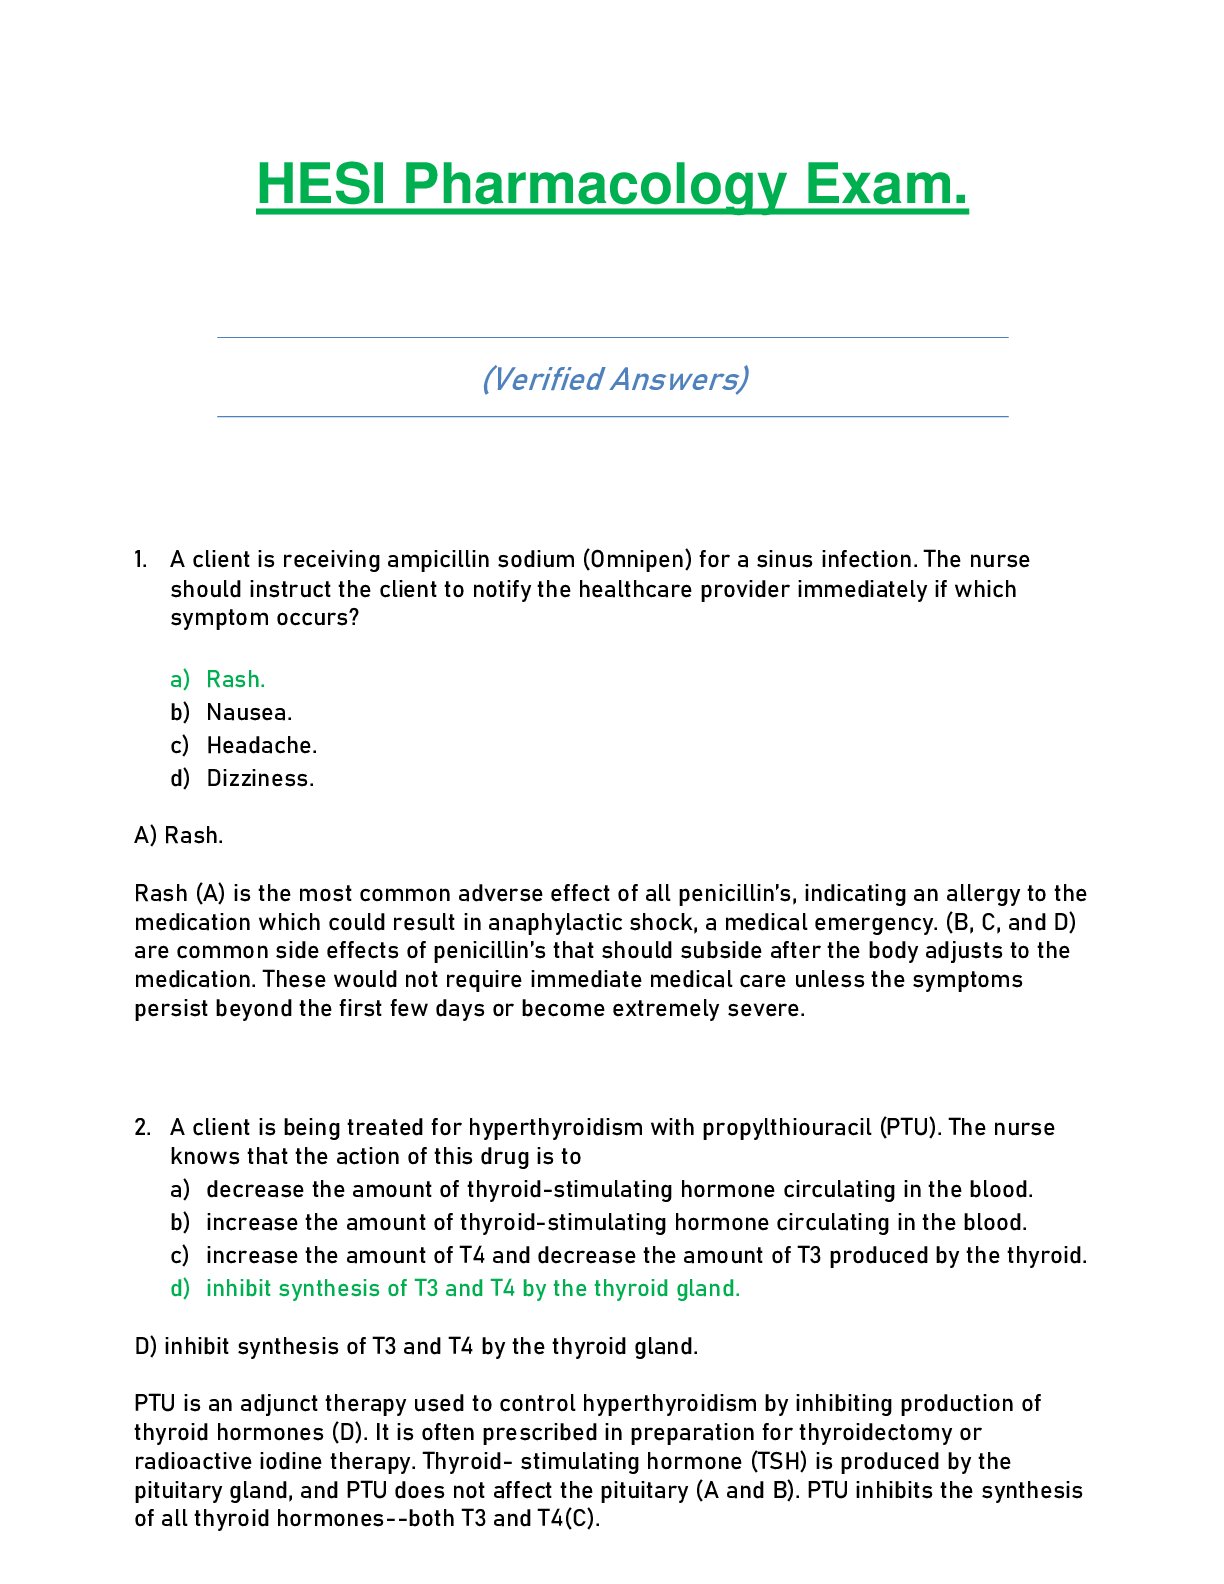 HESI Pharmacology Exam latest 2021/2022 (Verified Answers)